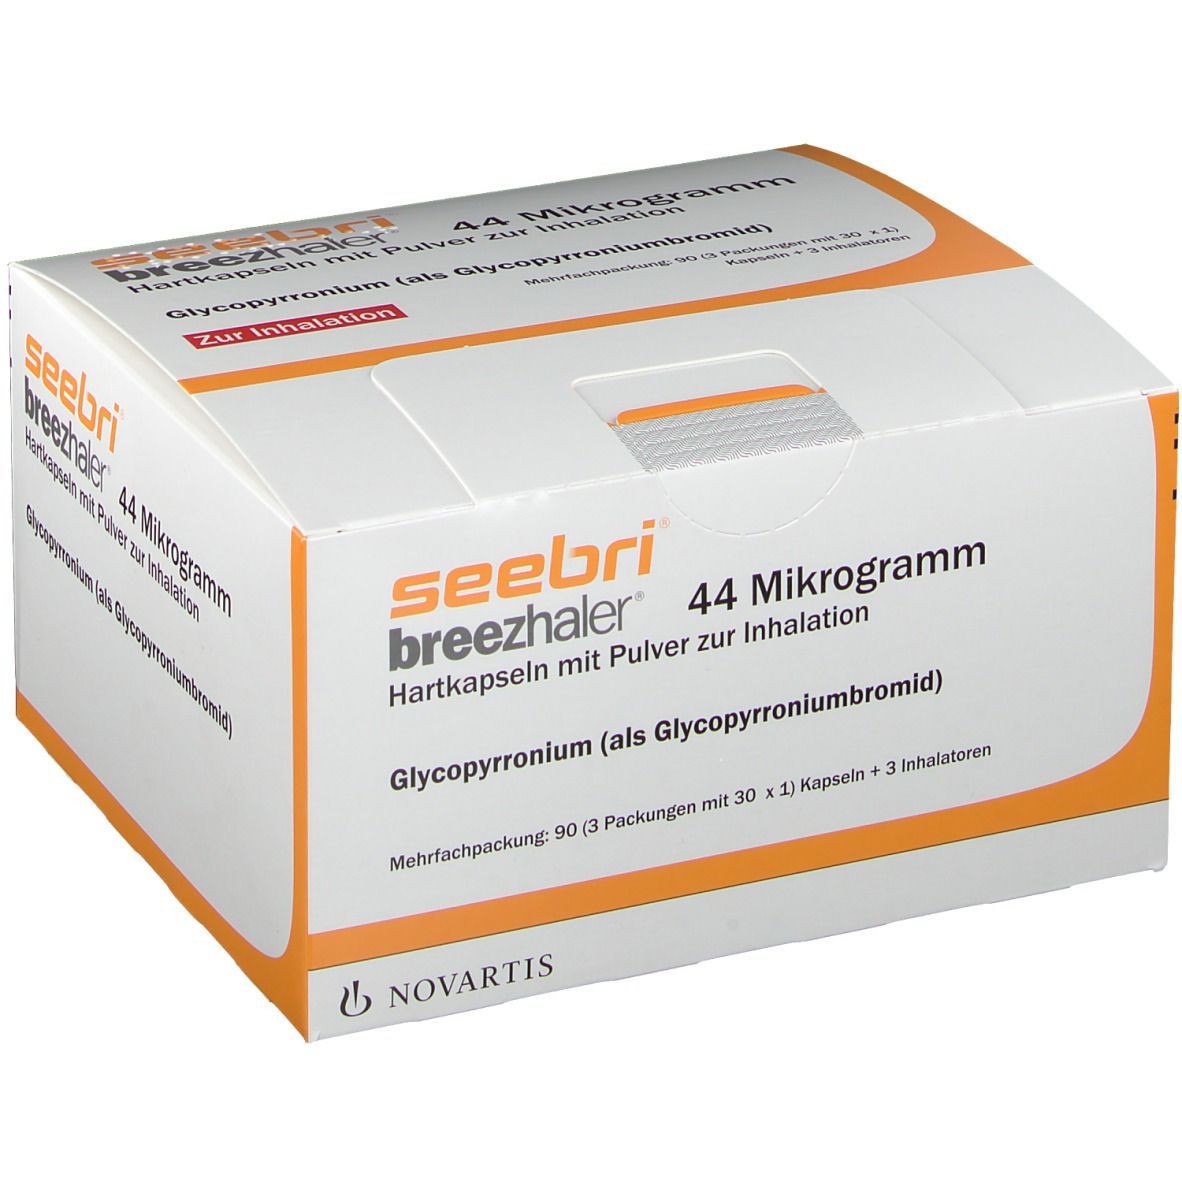 seebri® breezhaler® 44 Mikrogramm